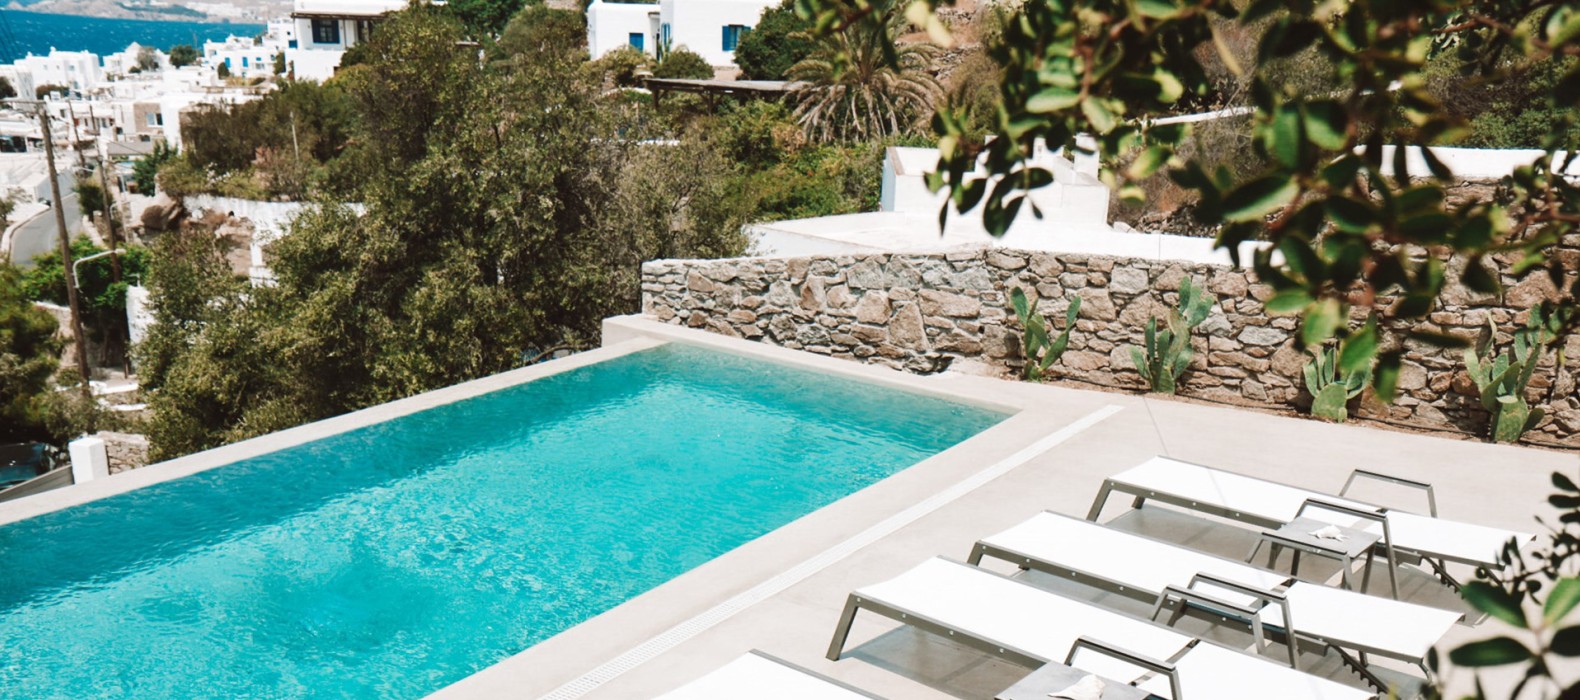 Exterior pool area of Villa Aiolos in Mykonos